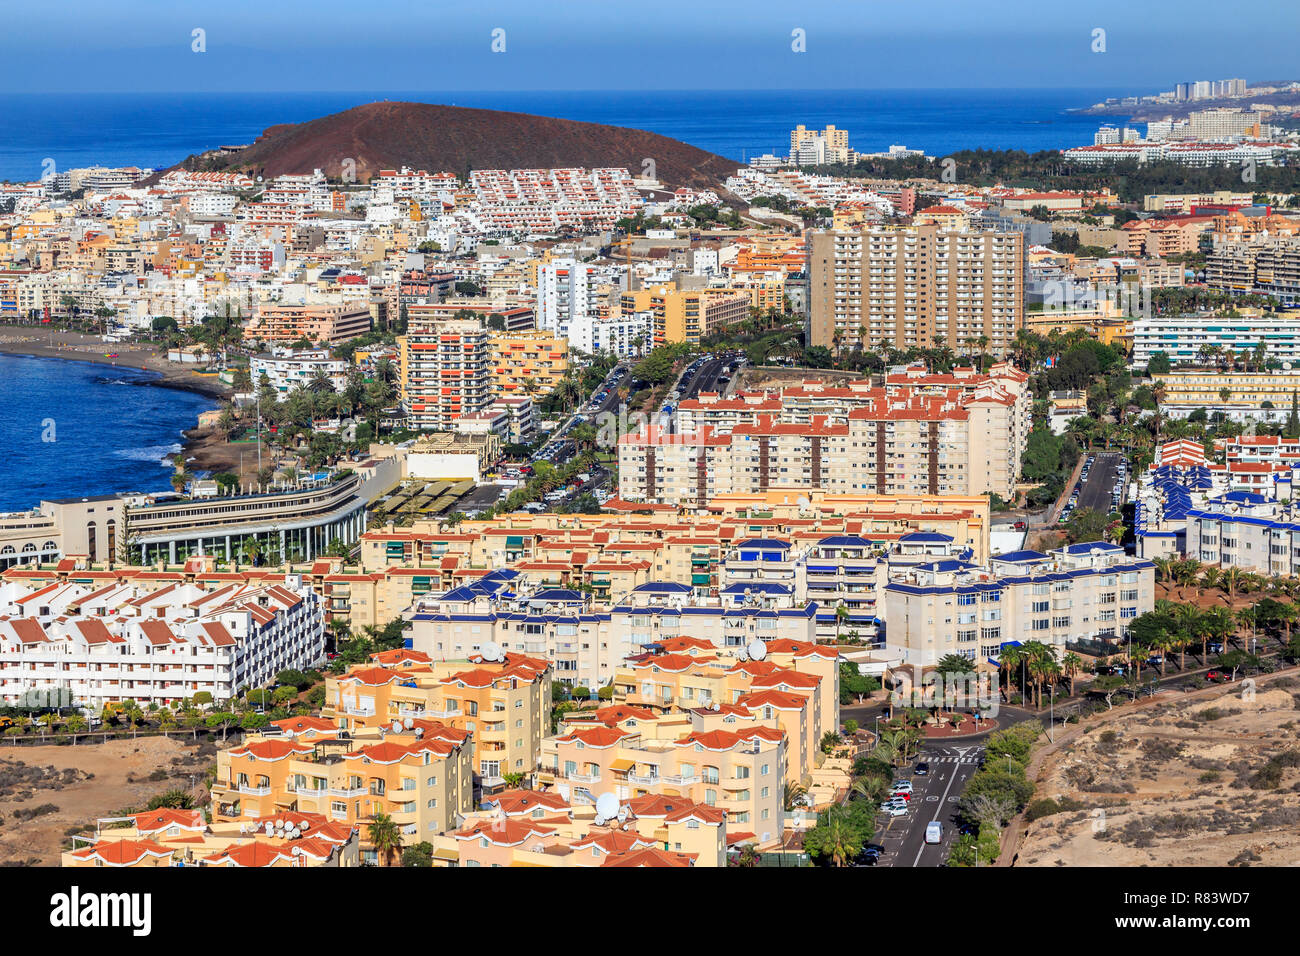 Los Cristianos , Playa de las Americas, Tenerife, Isole canarie, un isola spagnola, Spagna,al largo della costa del nord Africa occidentale. Foto Stock